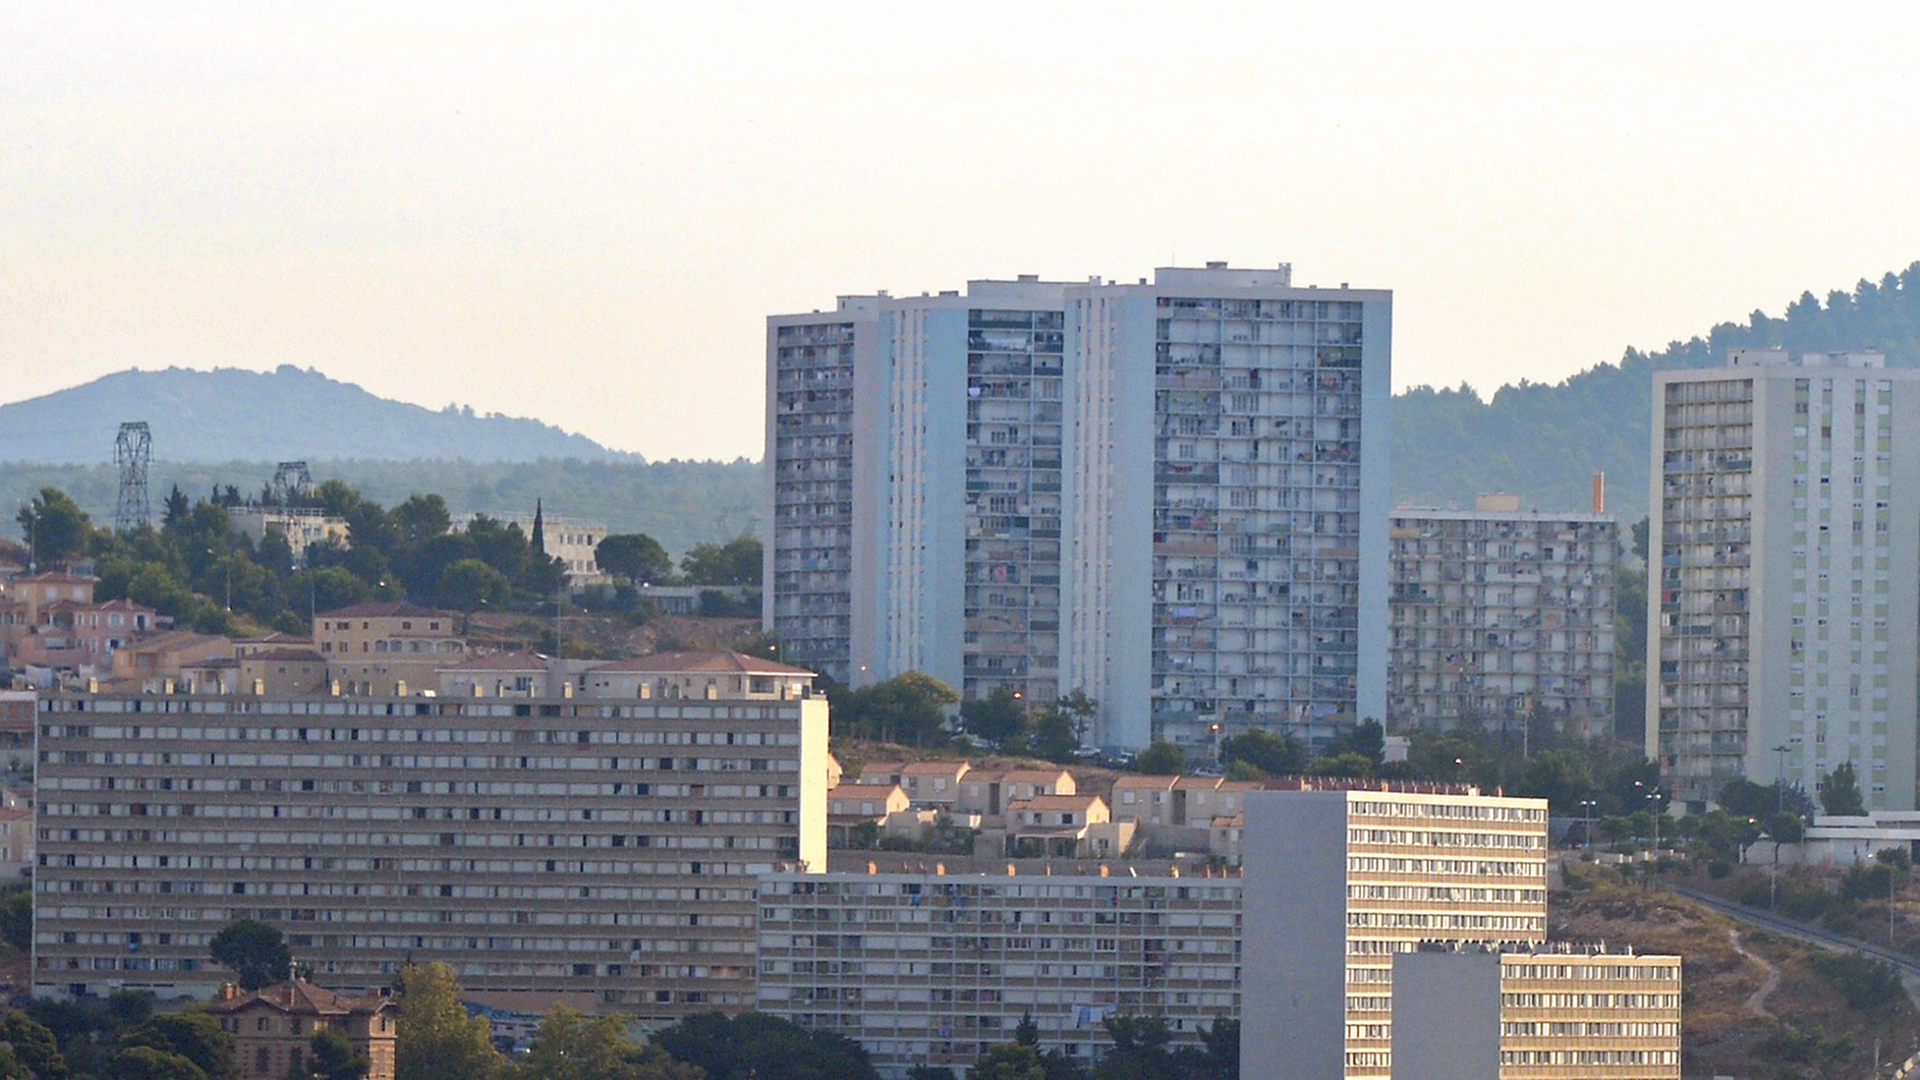 Blick auf eine Hochhaussiedlich in Marseille / Frankreich